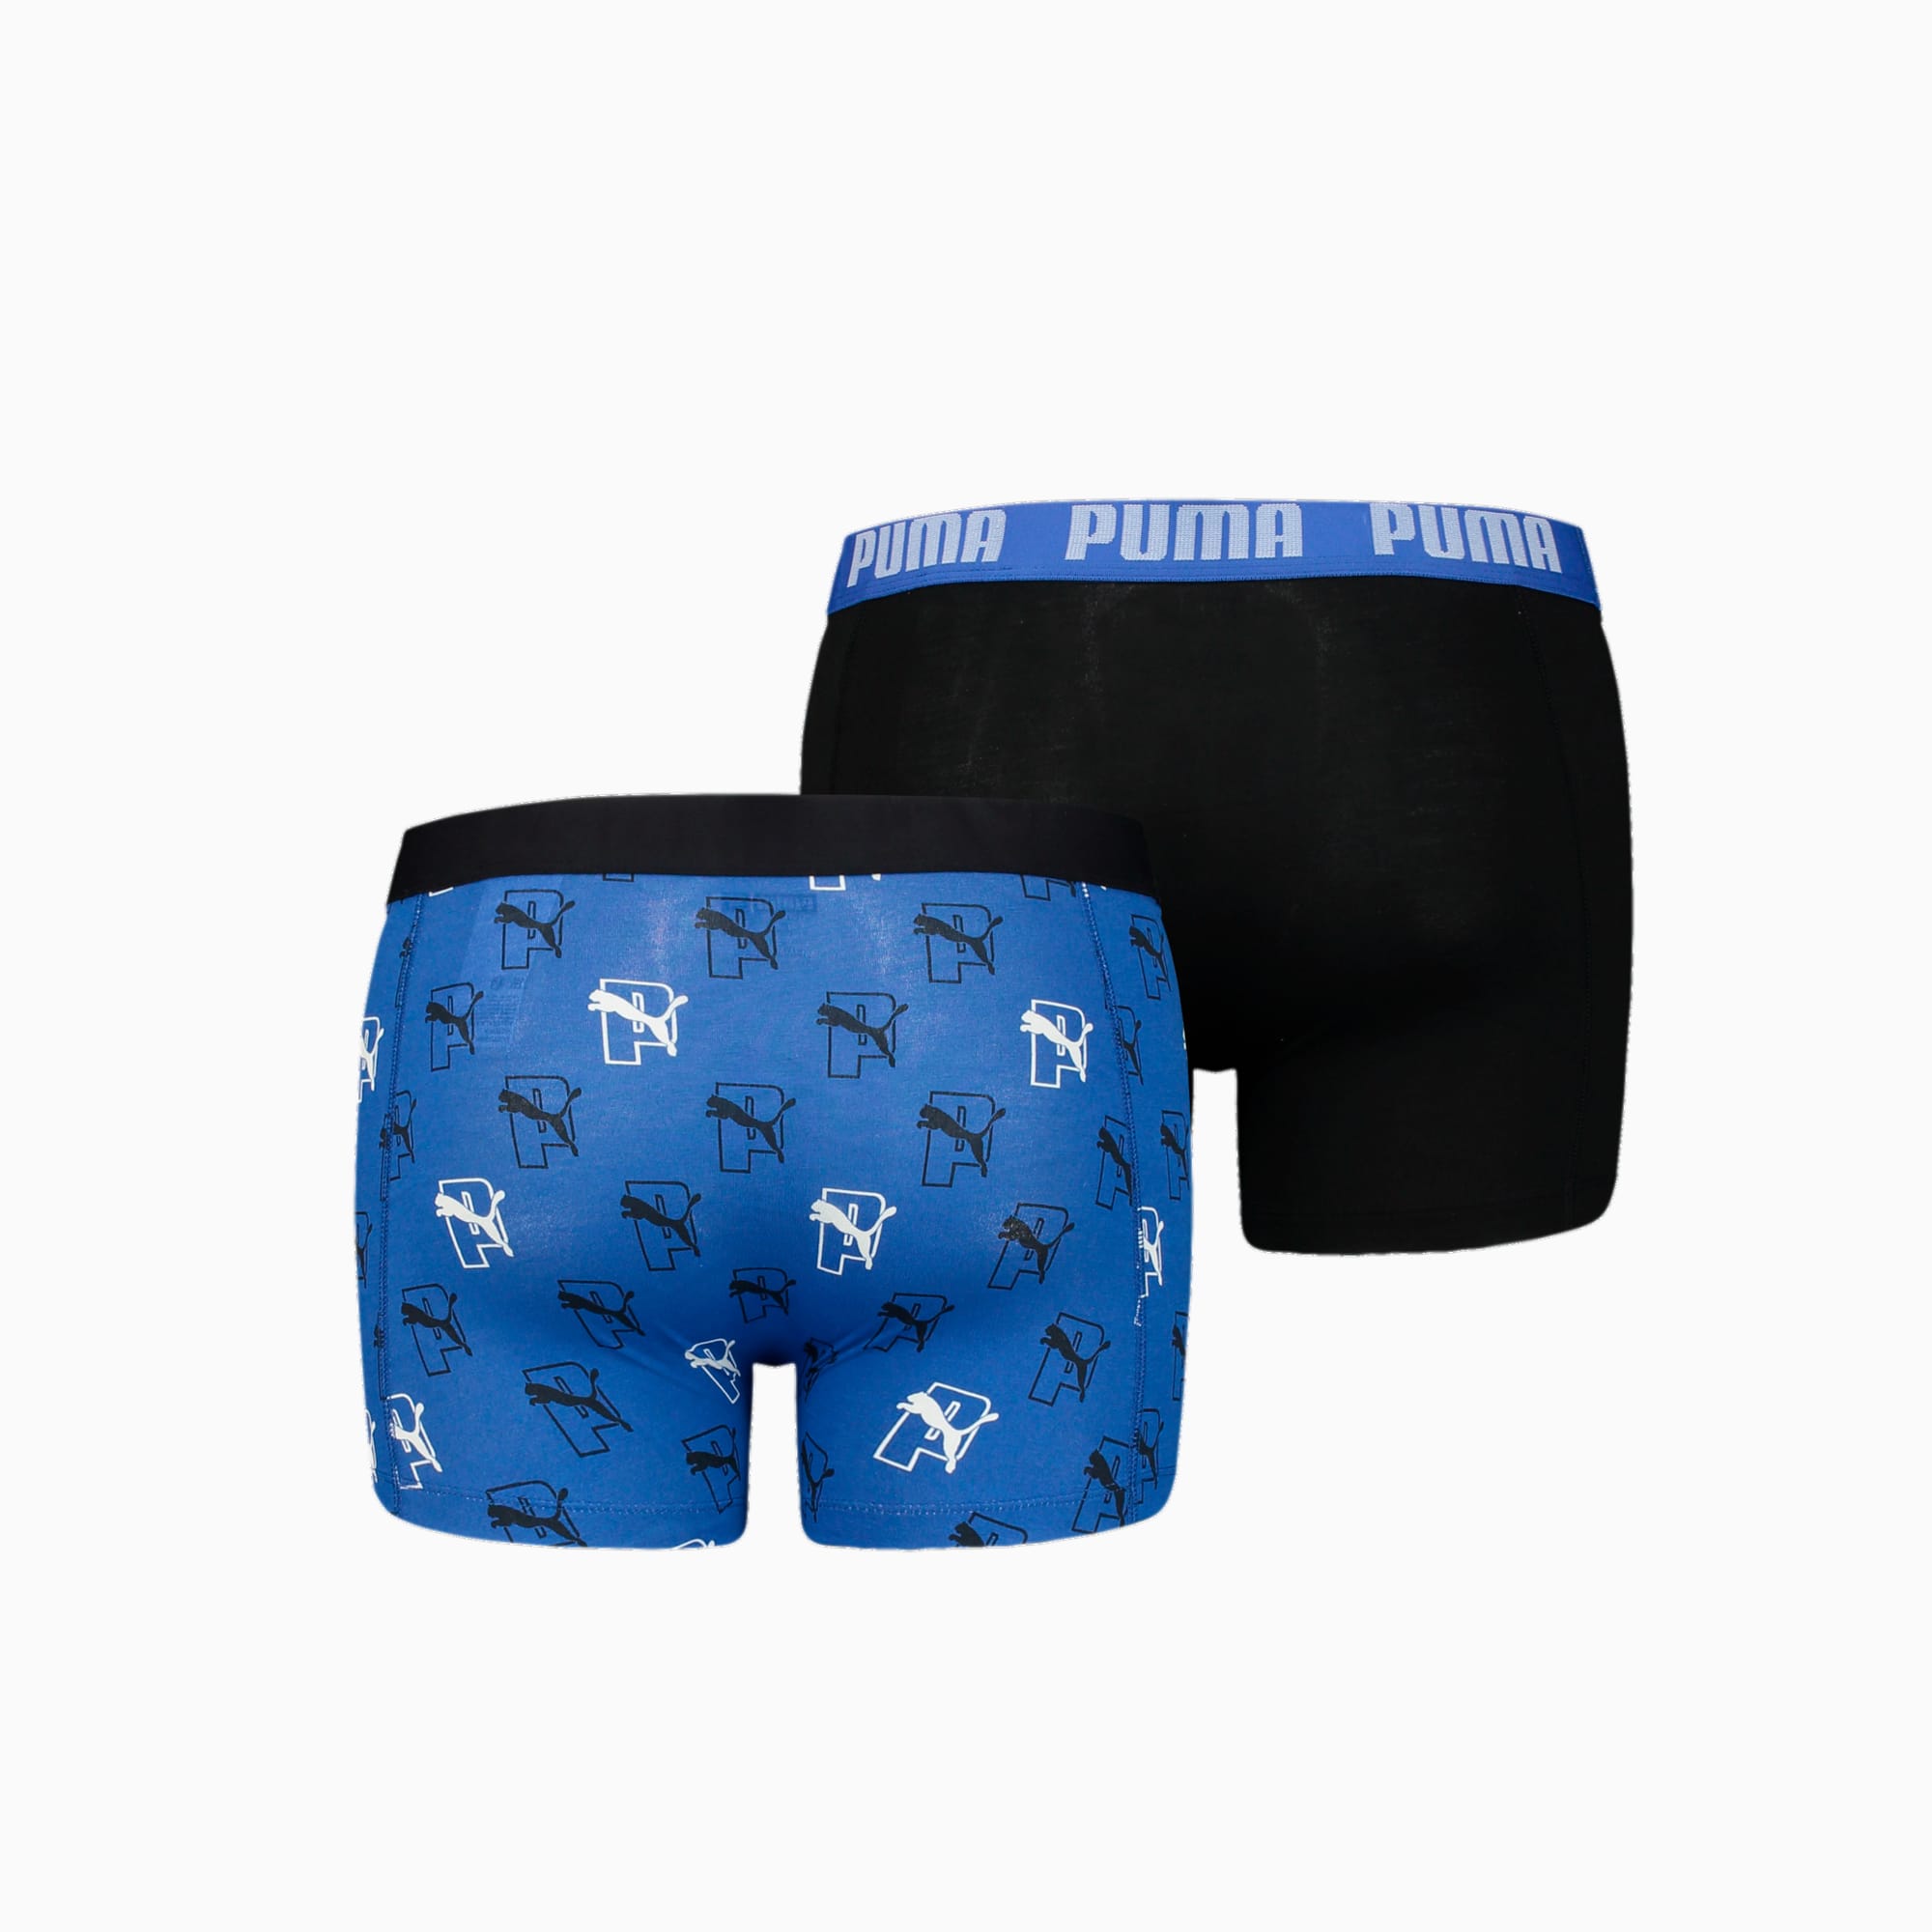 PUMA Boxershorts Met Doorlopend Logo, Blauw/Zwart